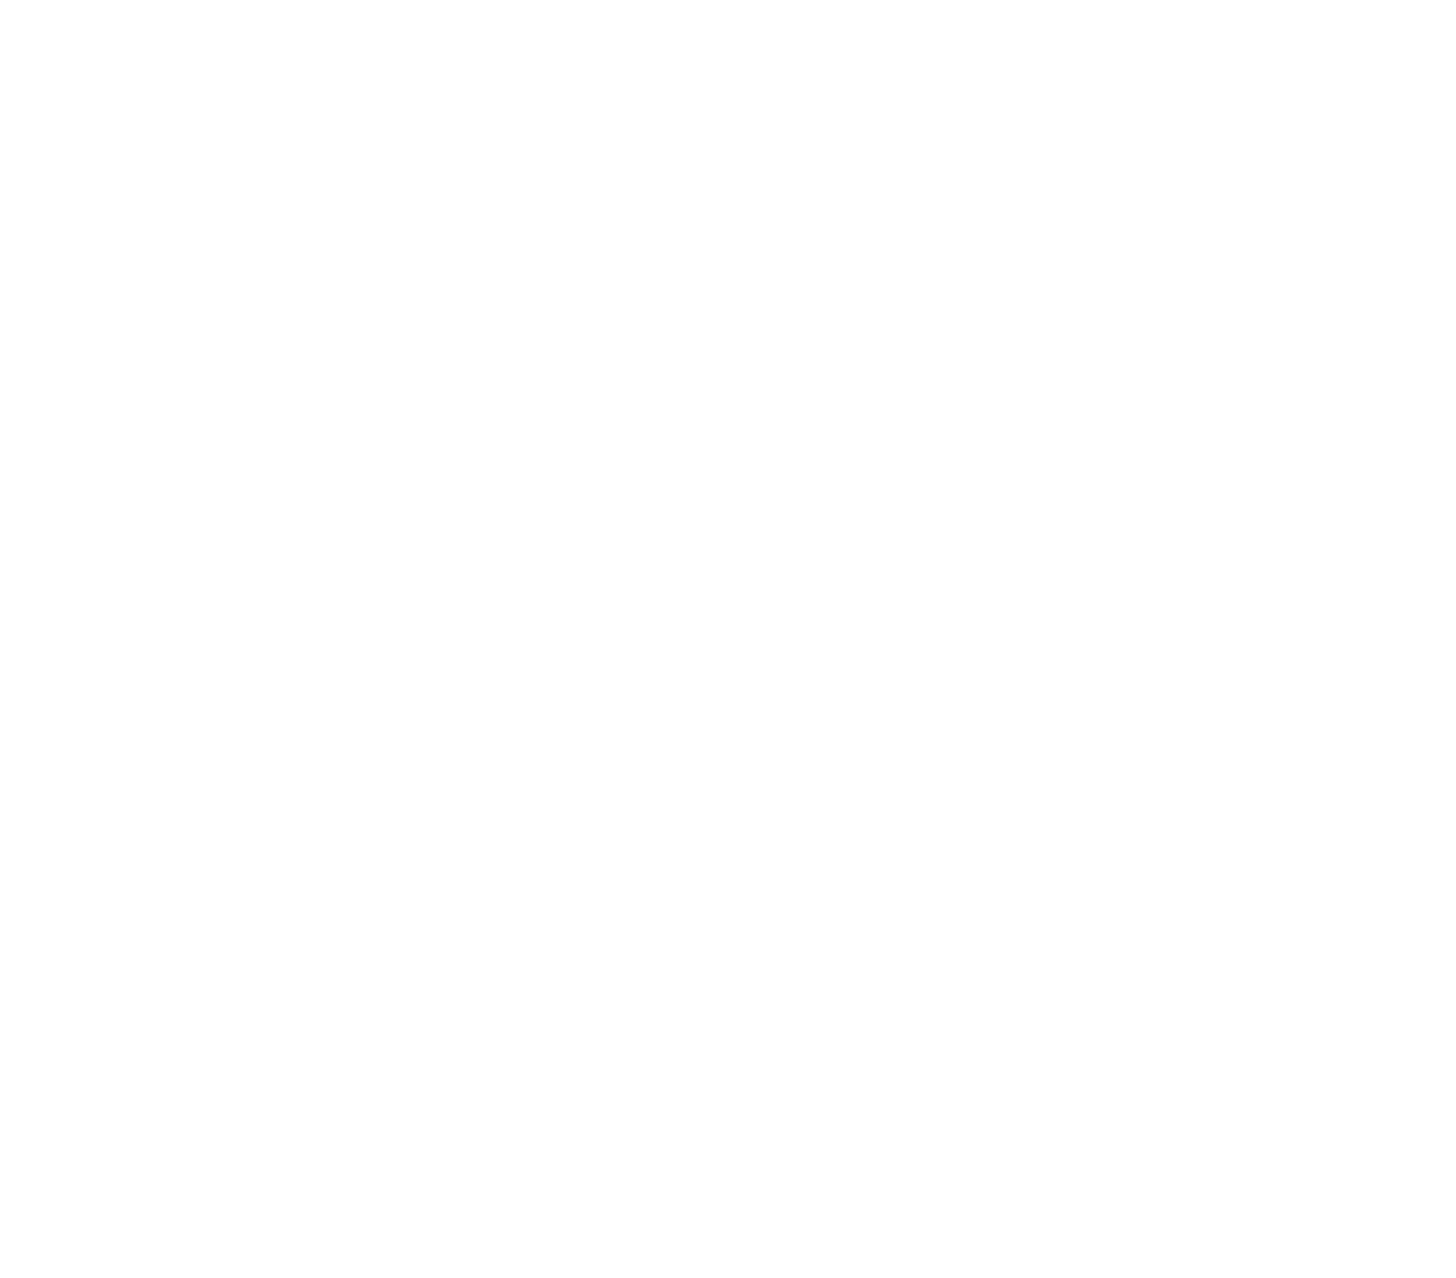 career center logo